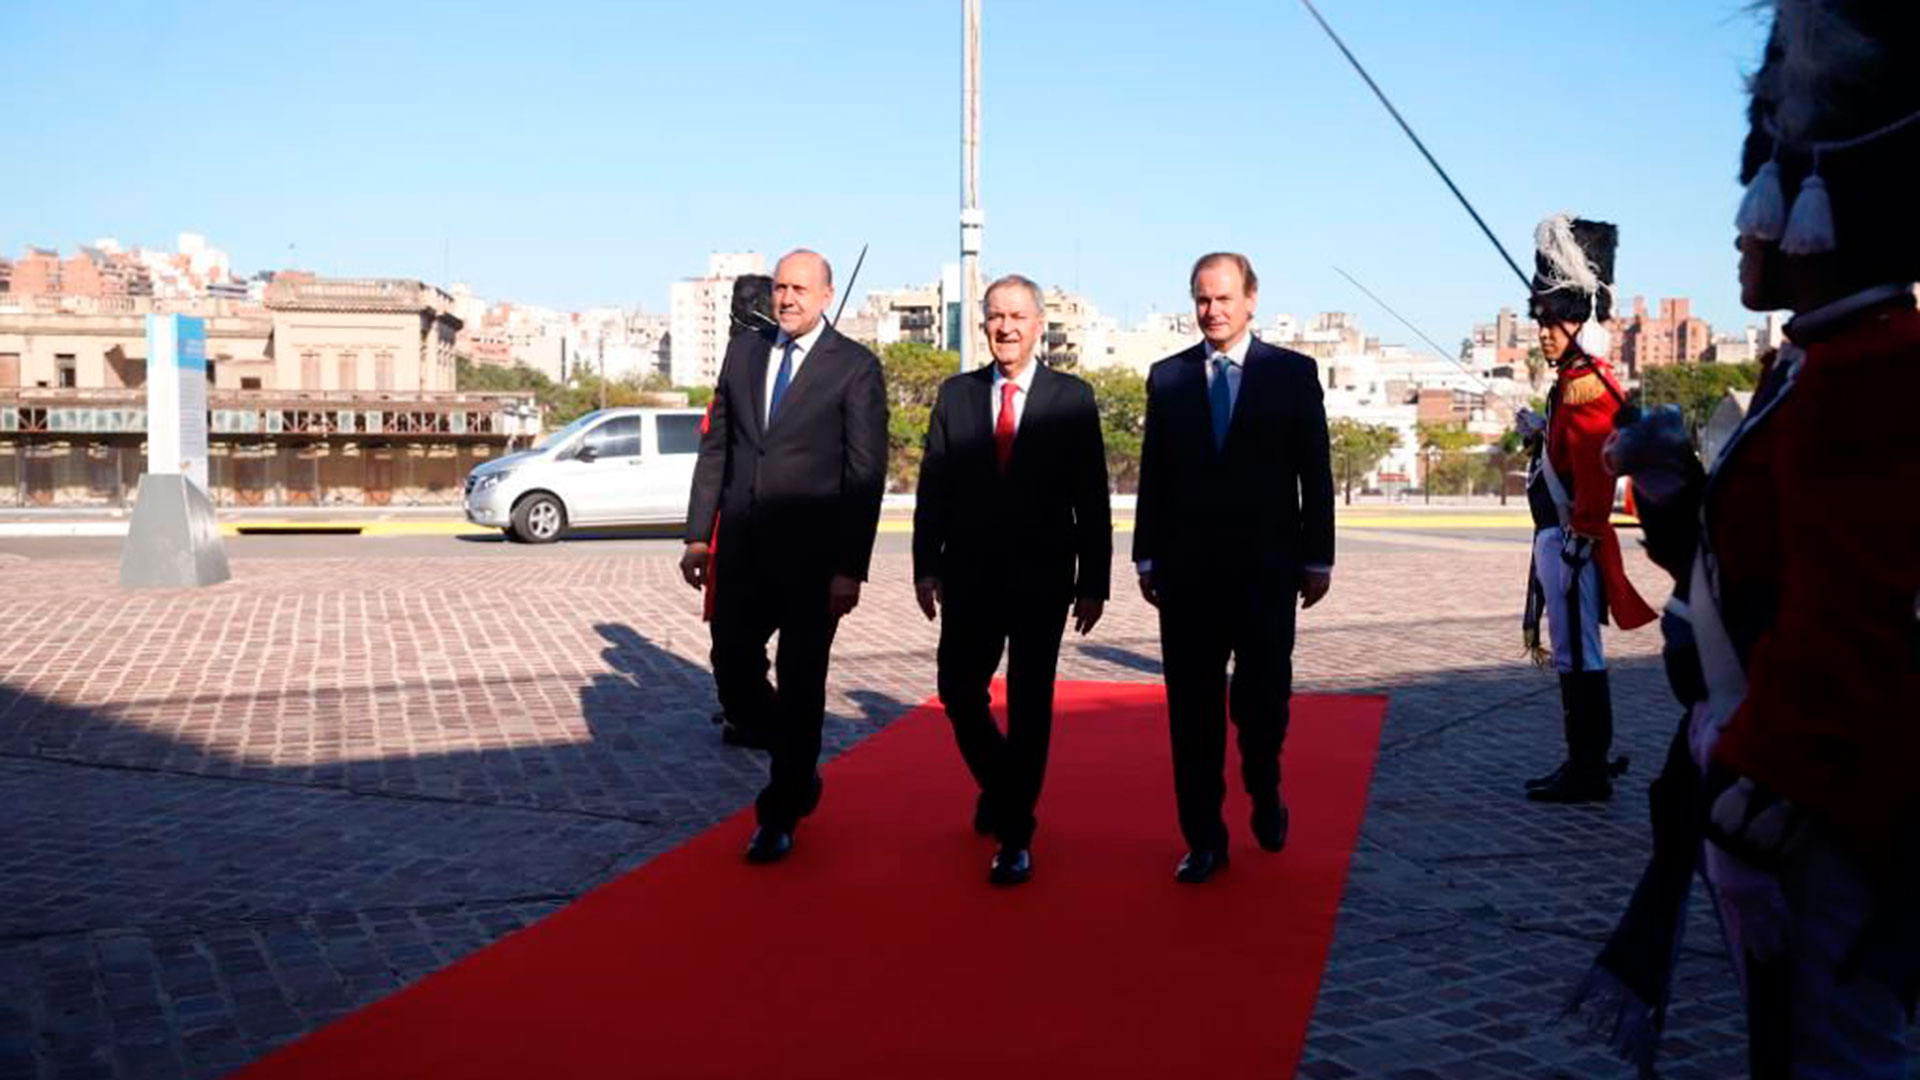 Los tres gobernadores caminan por la alfombra roja, durante el acto que se celebró para formalizar el traspaso de la Presidencia Pro Témpore de la Región Centro